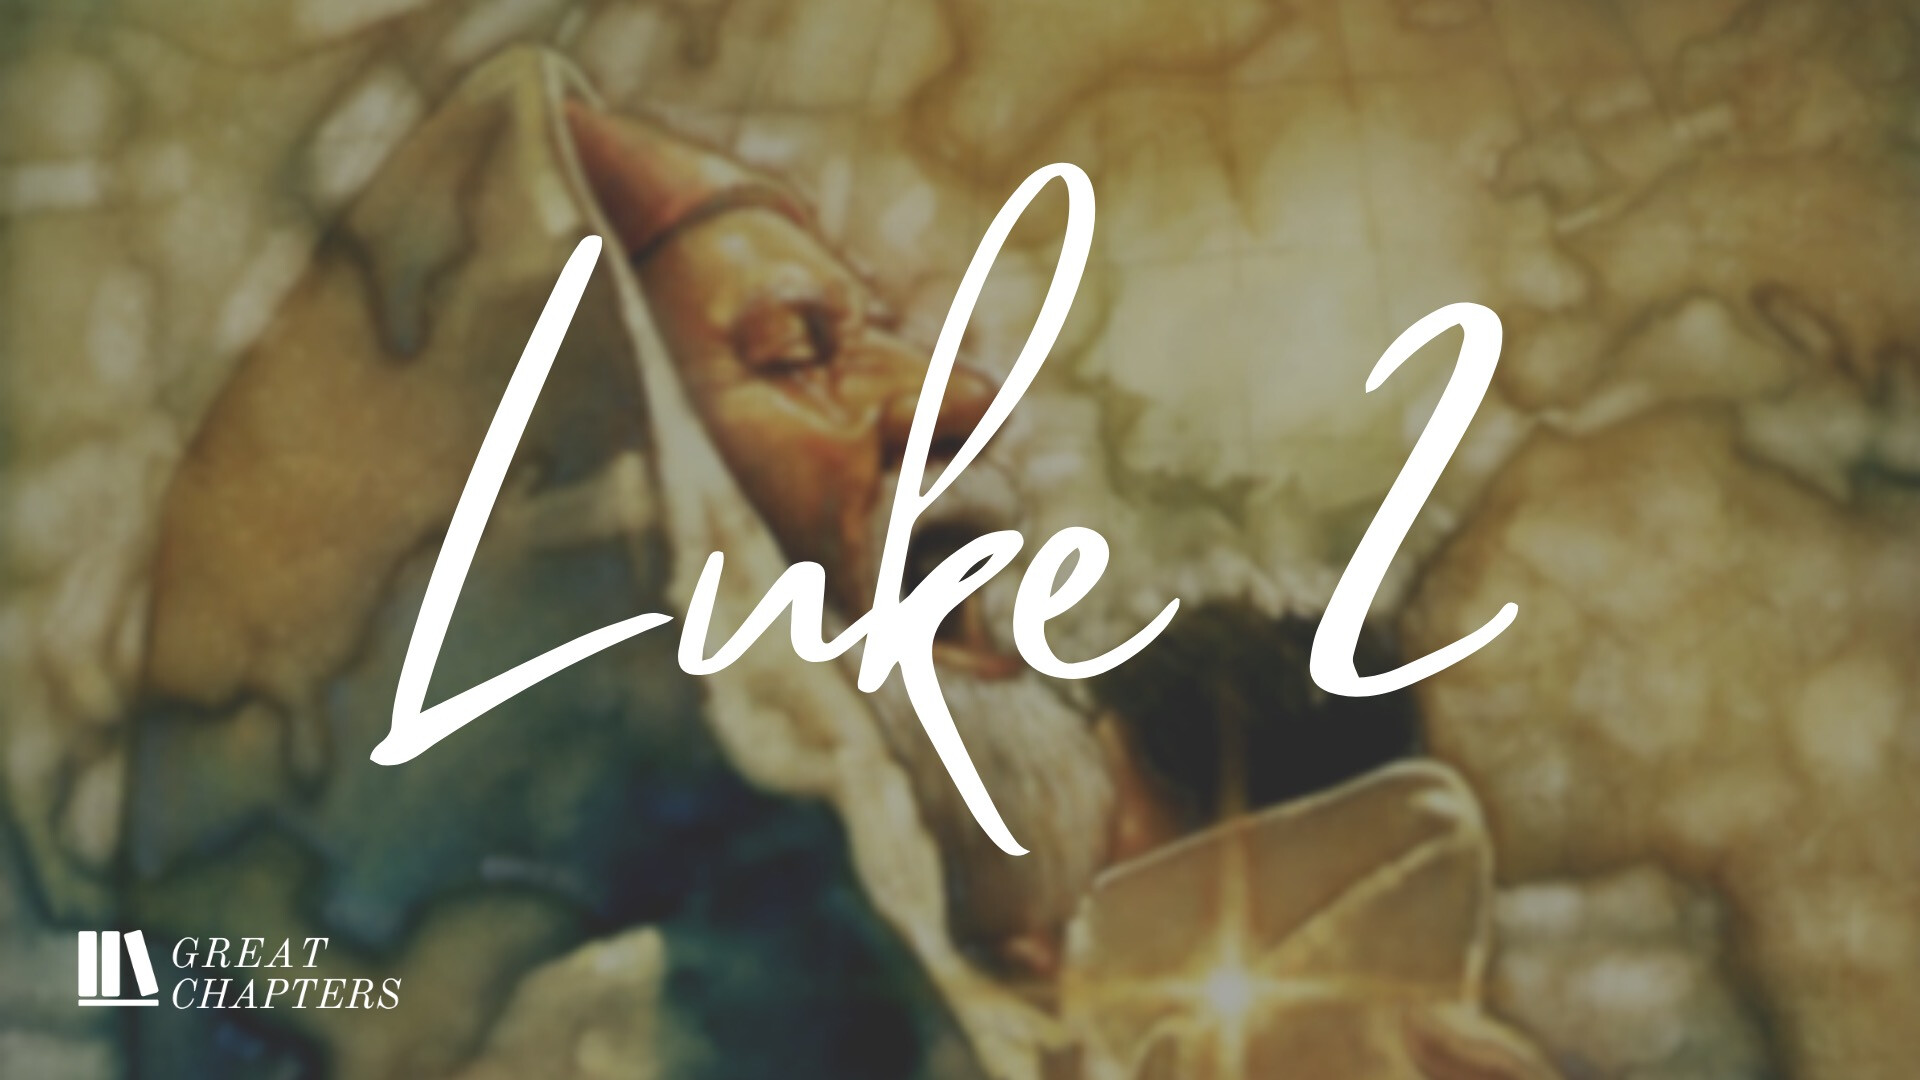 Great Chapters: Luke 2